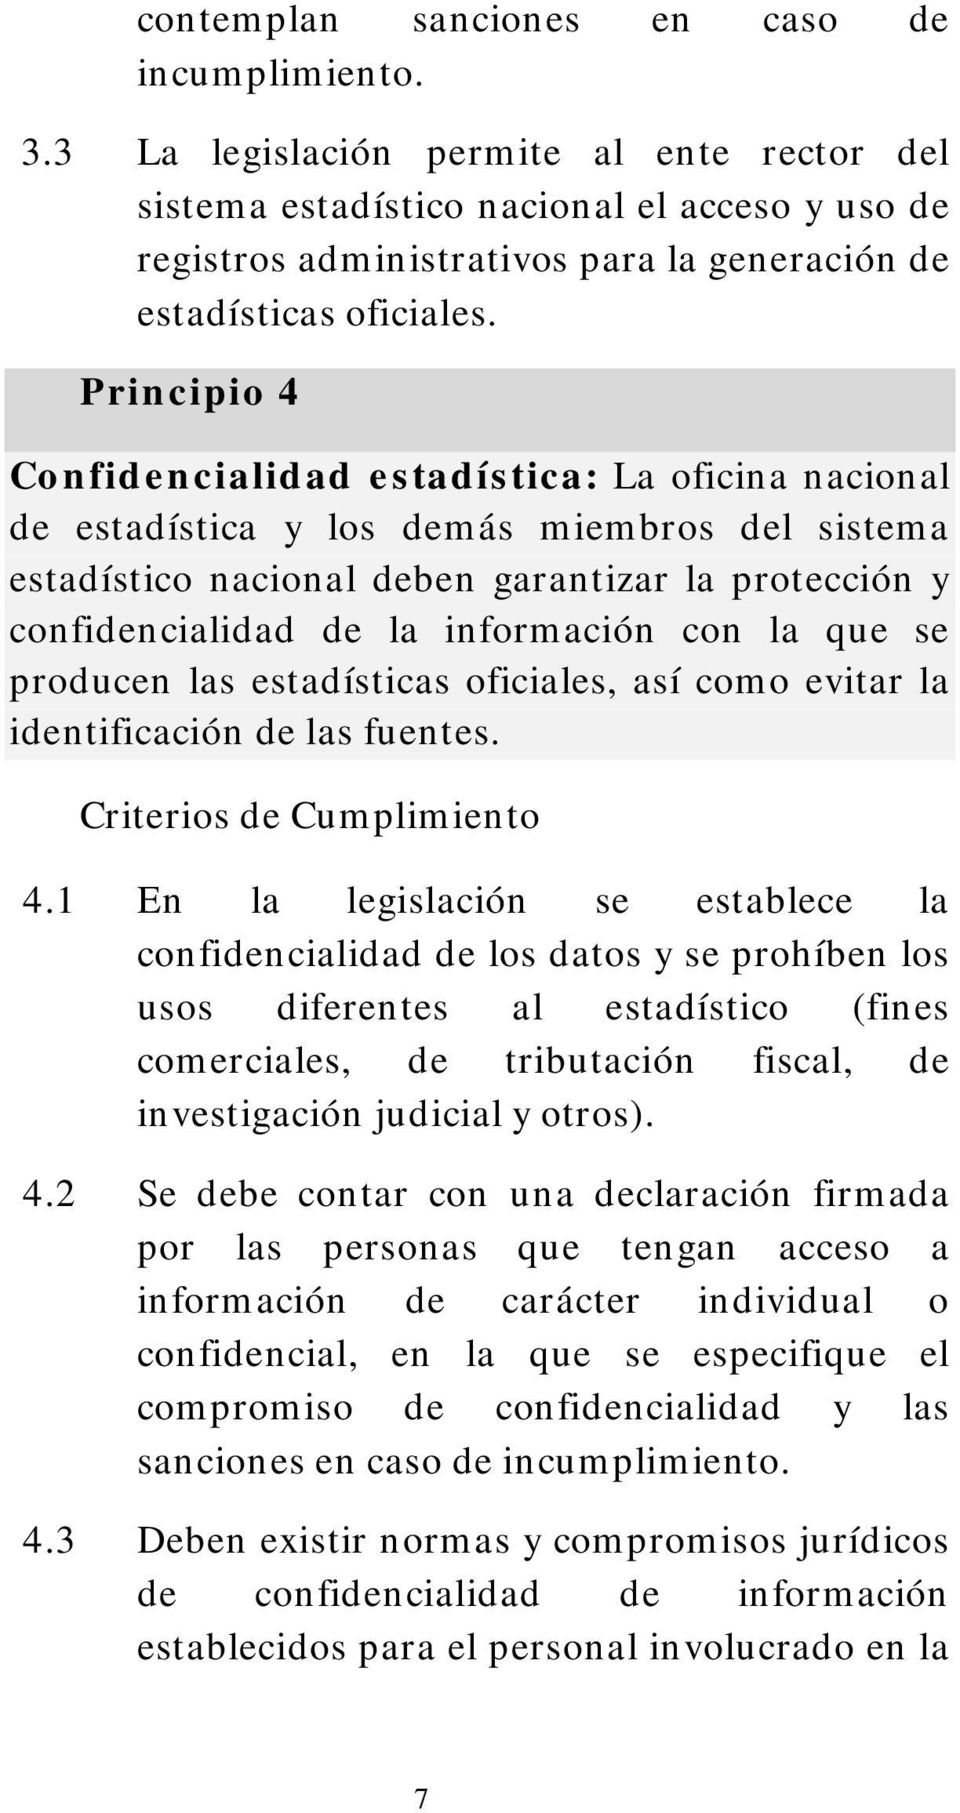 Principio 4 Confidencialidad estadística: La oficina nacional de estadística y los demás miembros del sistema estadístico nacional deben garantizar la protección y confidencialidad de la información